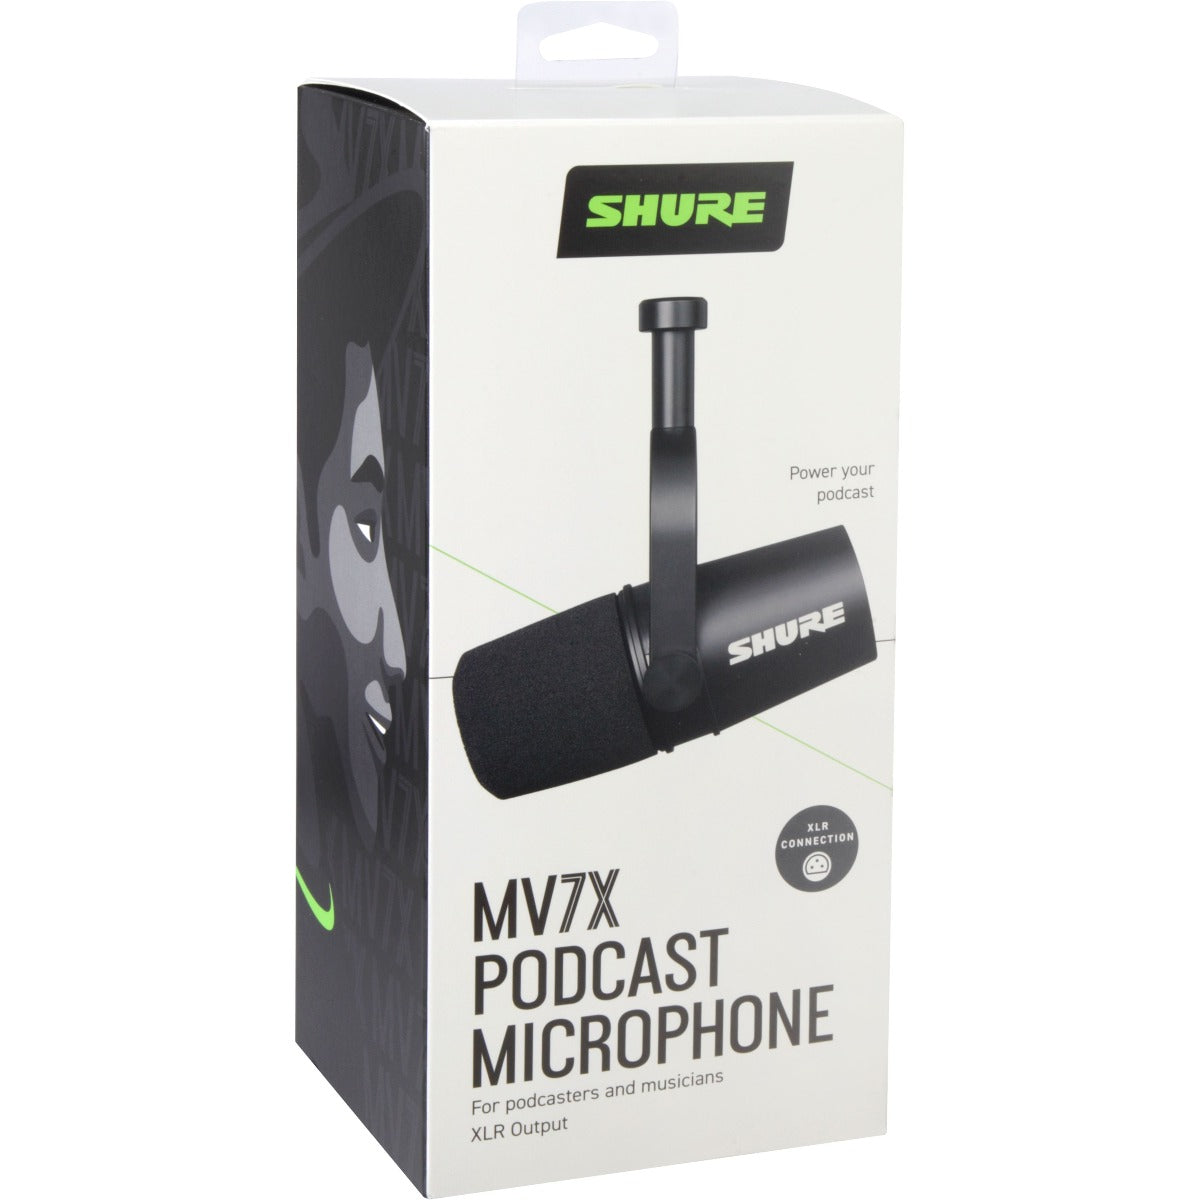 Shure MV7X Podcast Microphone BONUS PAK – Kraft Music